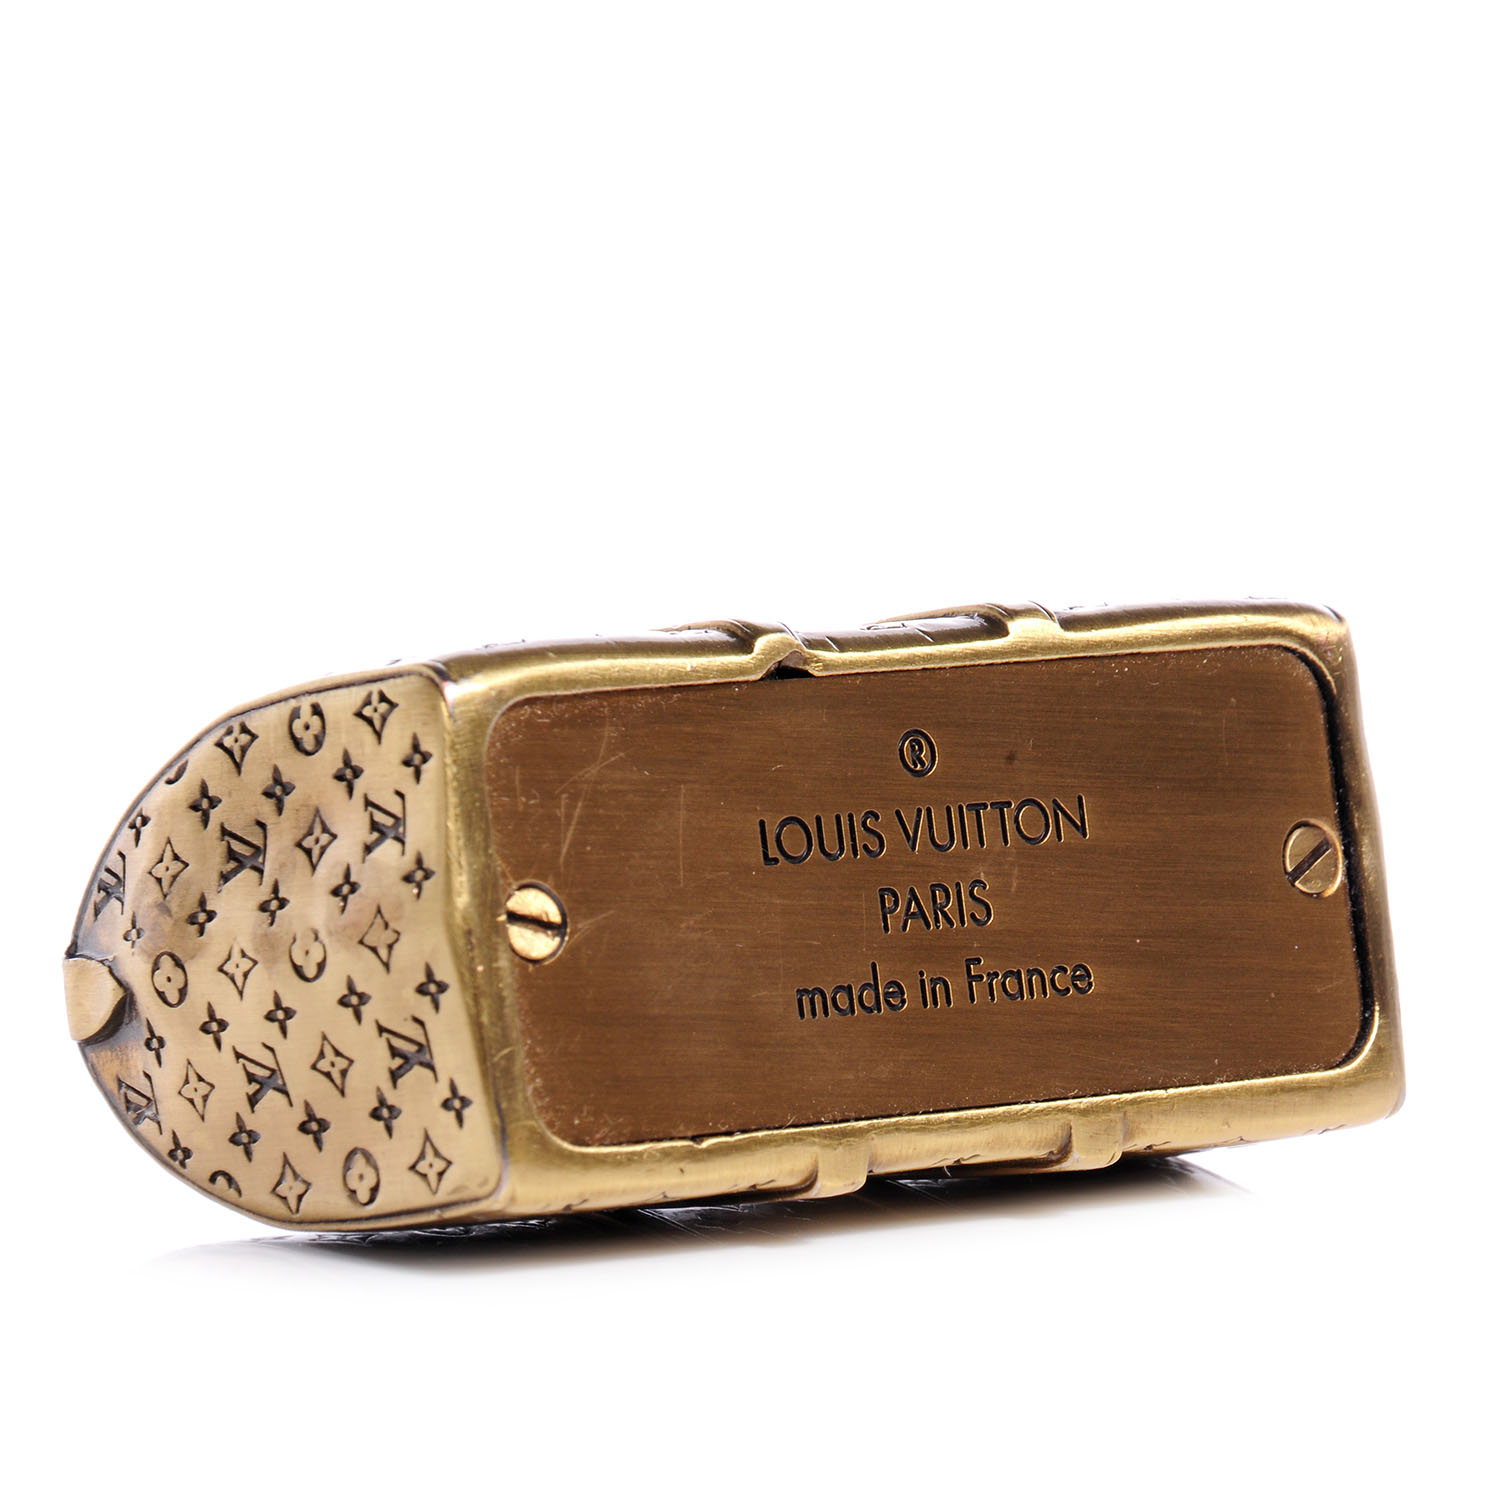 LOUIS VUITTON Antique Brass Keepall Paperweight 71176